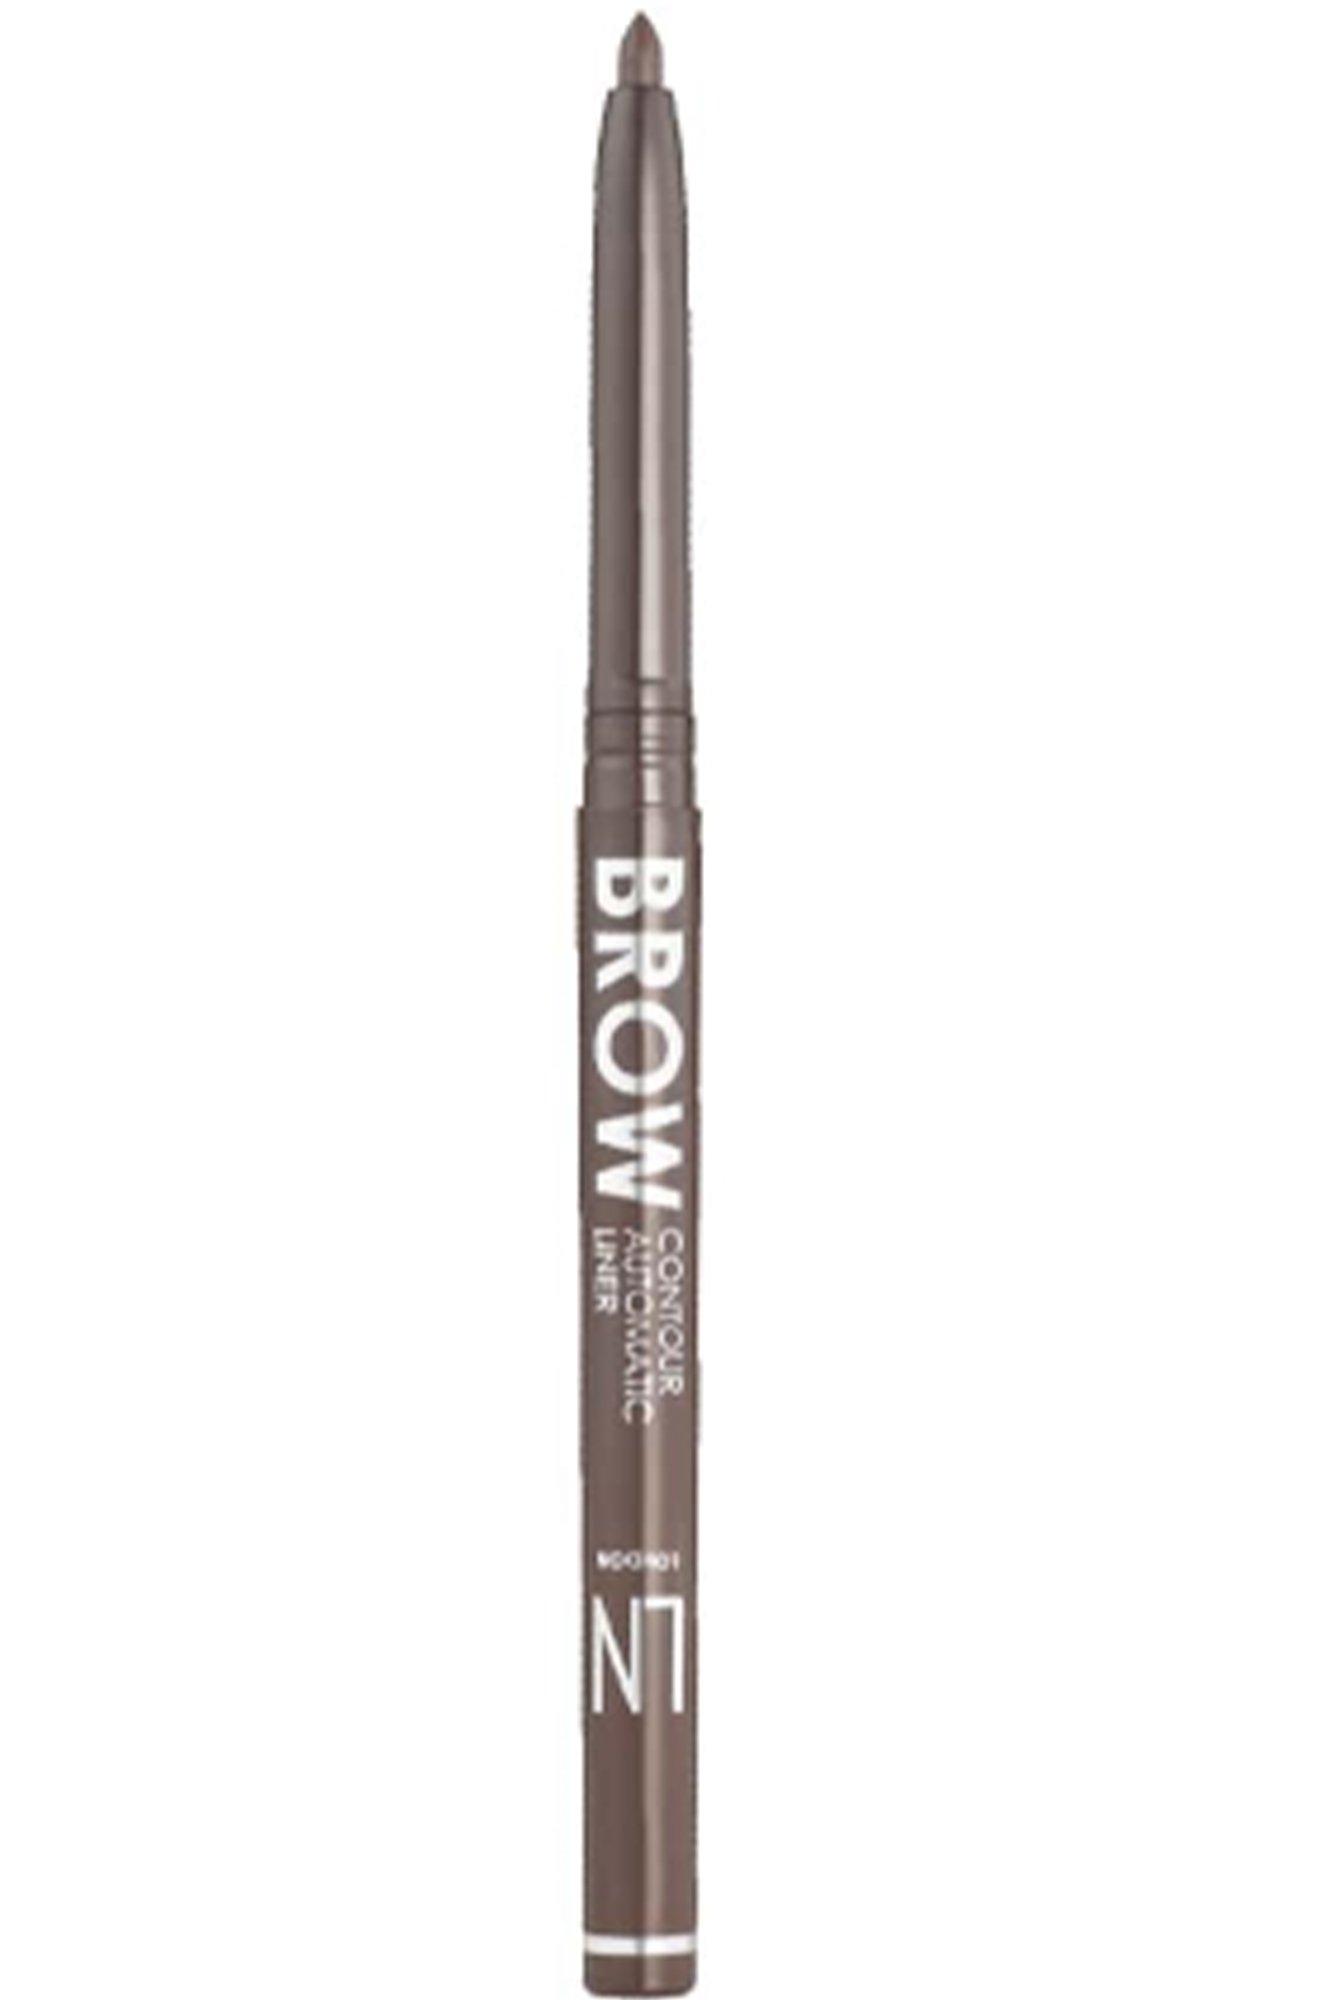 Карандаш для бровей механический Brow contour т.303 0,3 г LN Professional